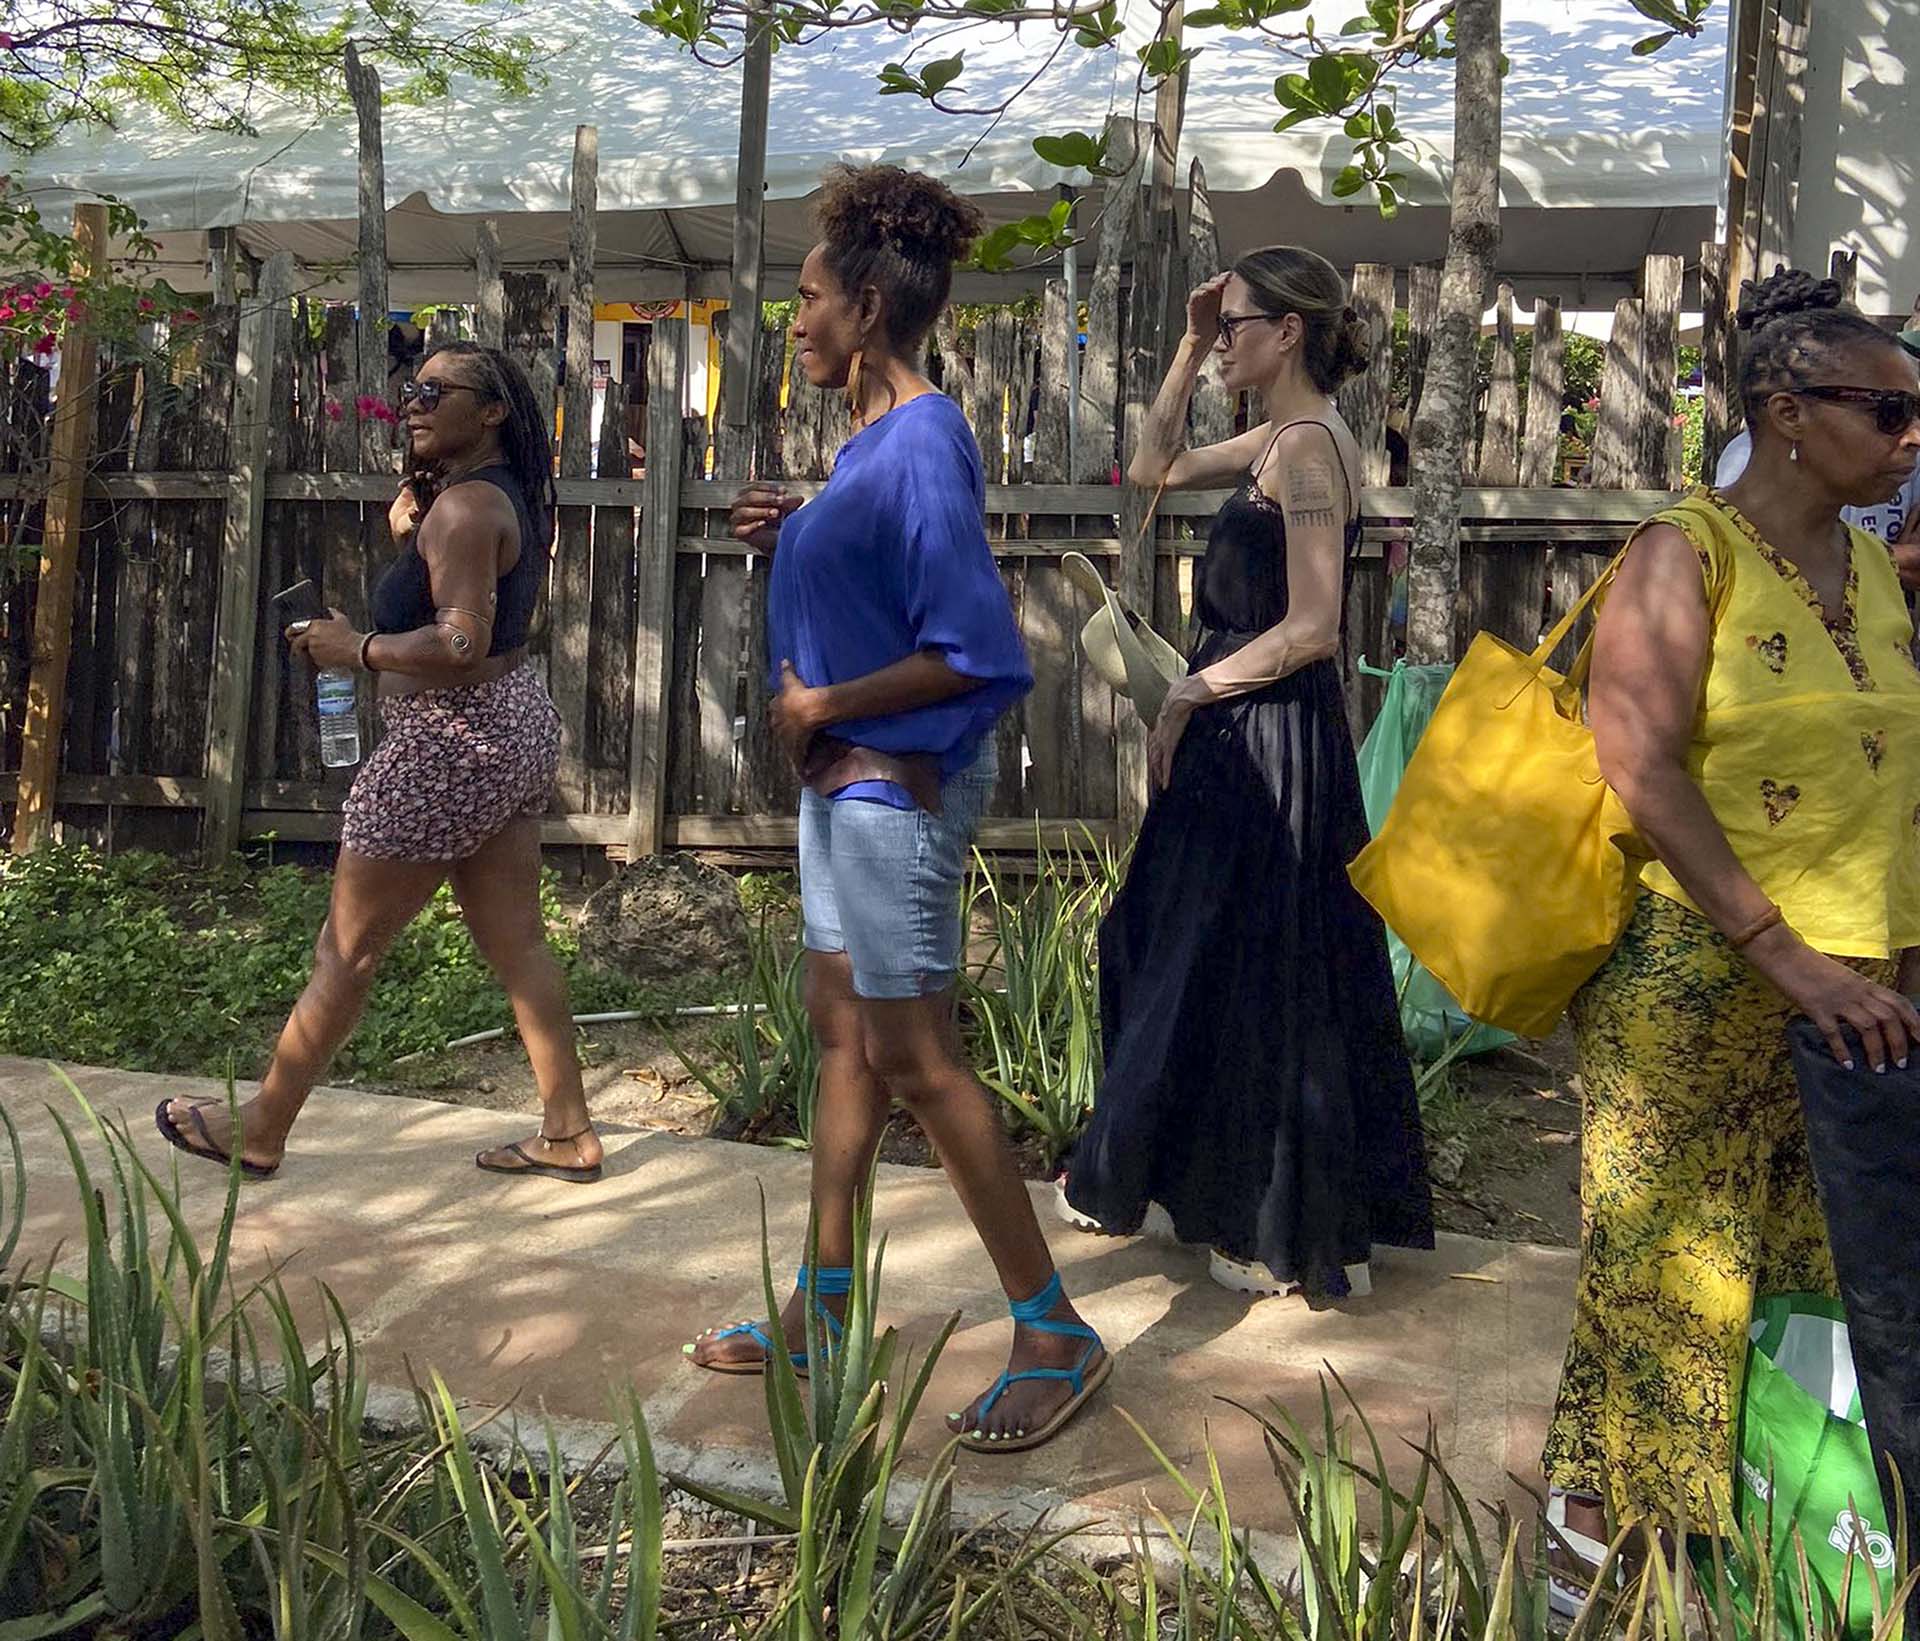 Angelina Jolie fue fotografiada mientras caminaba por una feria en Jamaica, en donde se encuentra de vacaciones. La reconocida actriz se detuvo en un puesto a comprar compró productos de salud y belleza